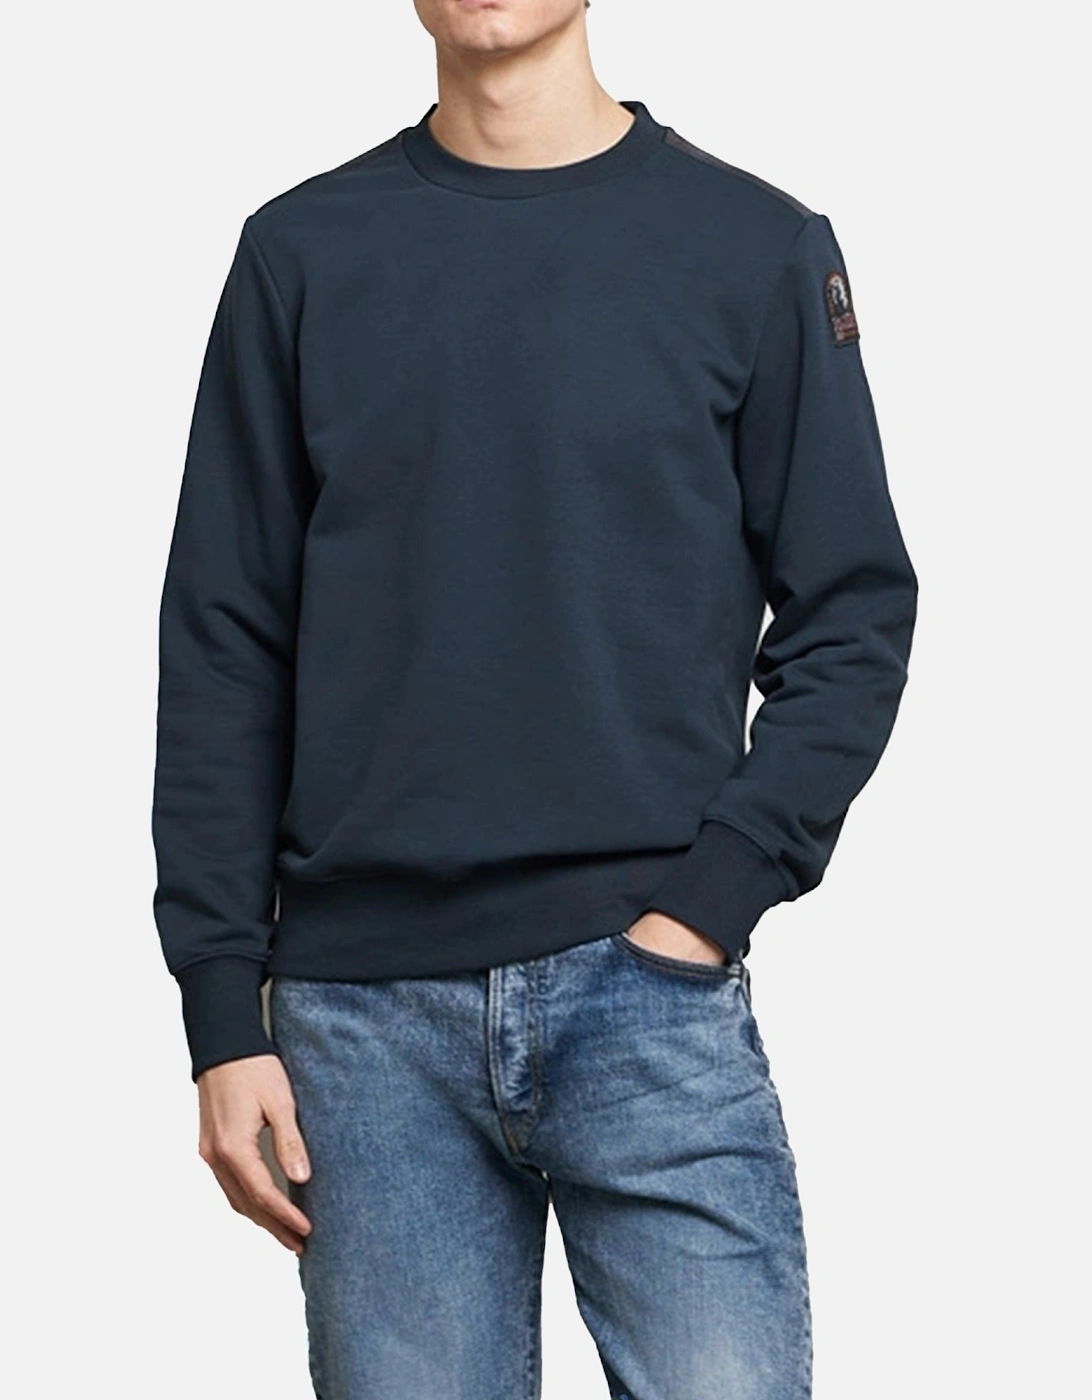 K2 Crew neck Navy Sweatshirt